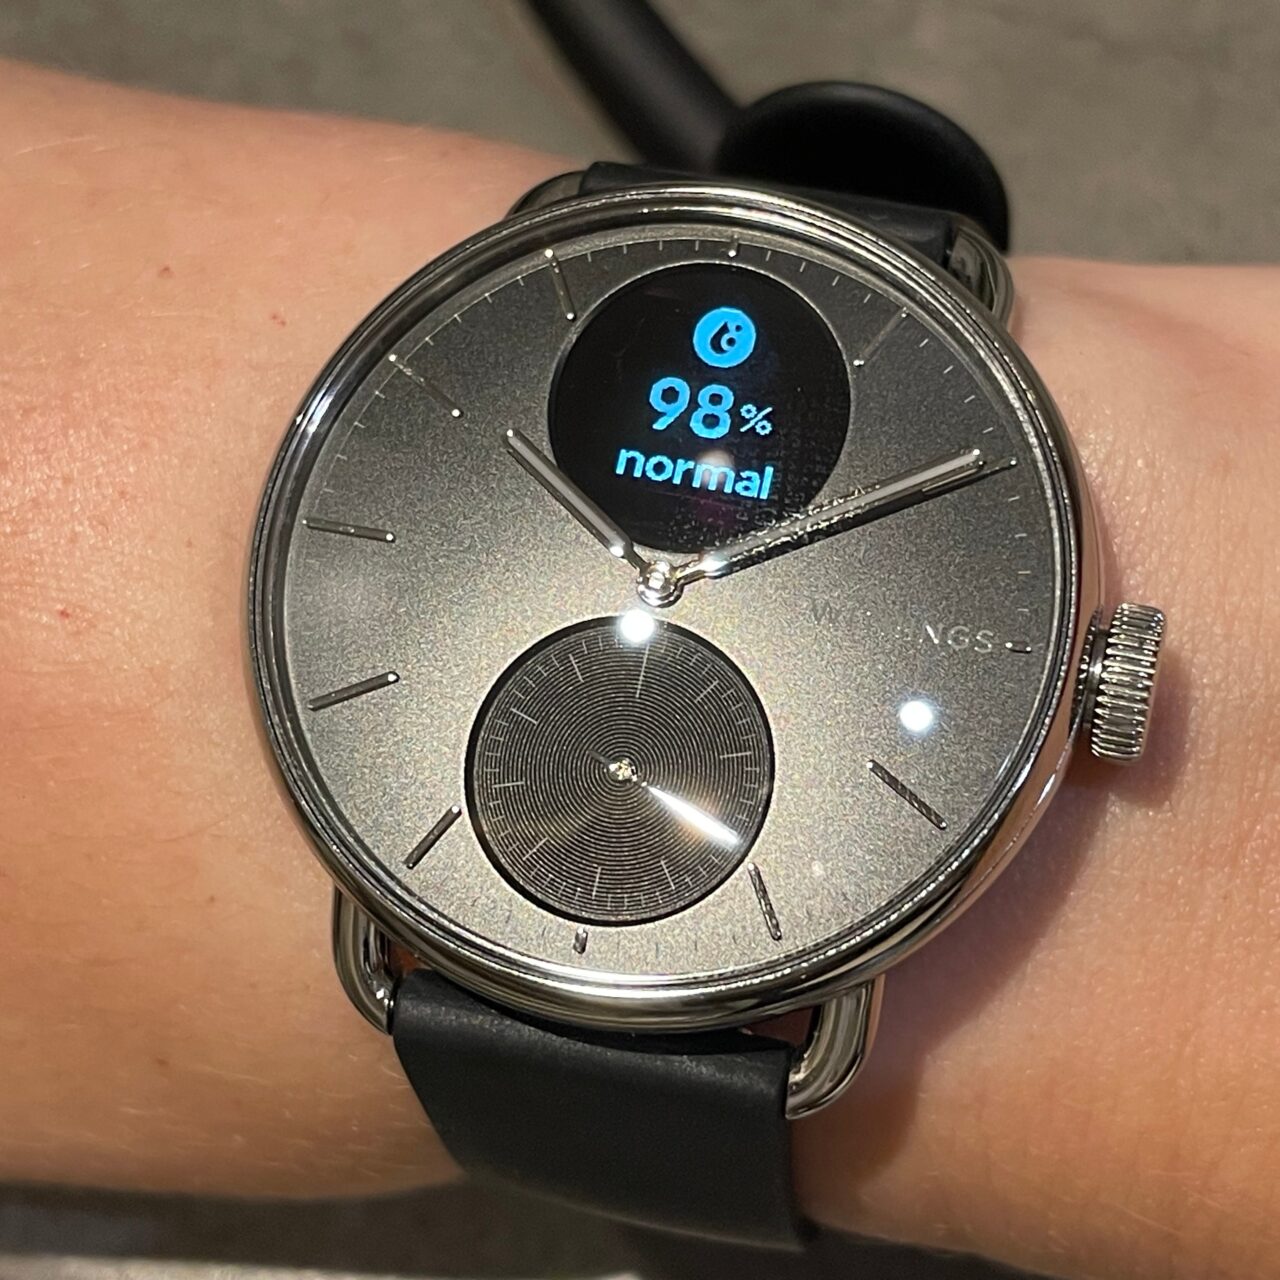 Zegarek na ręku z cyfrowym wyświetlaczem pokazującym 98% i słowo "normal" na tarczy analogowej.